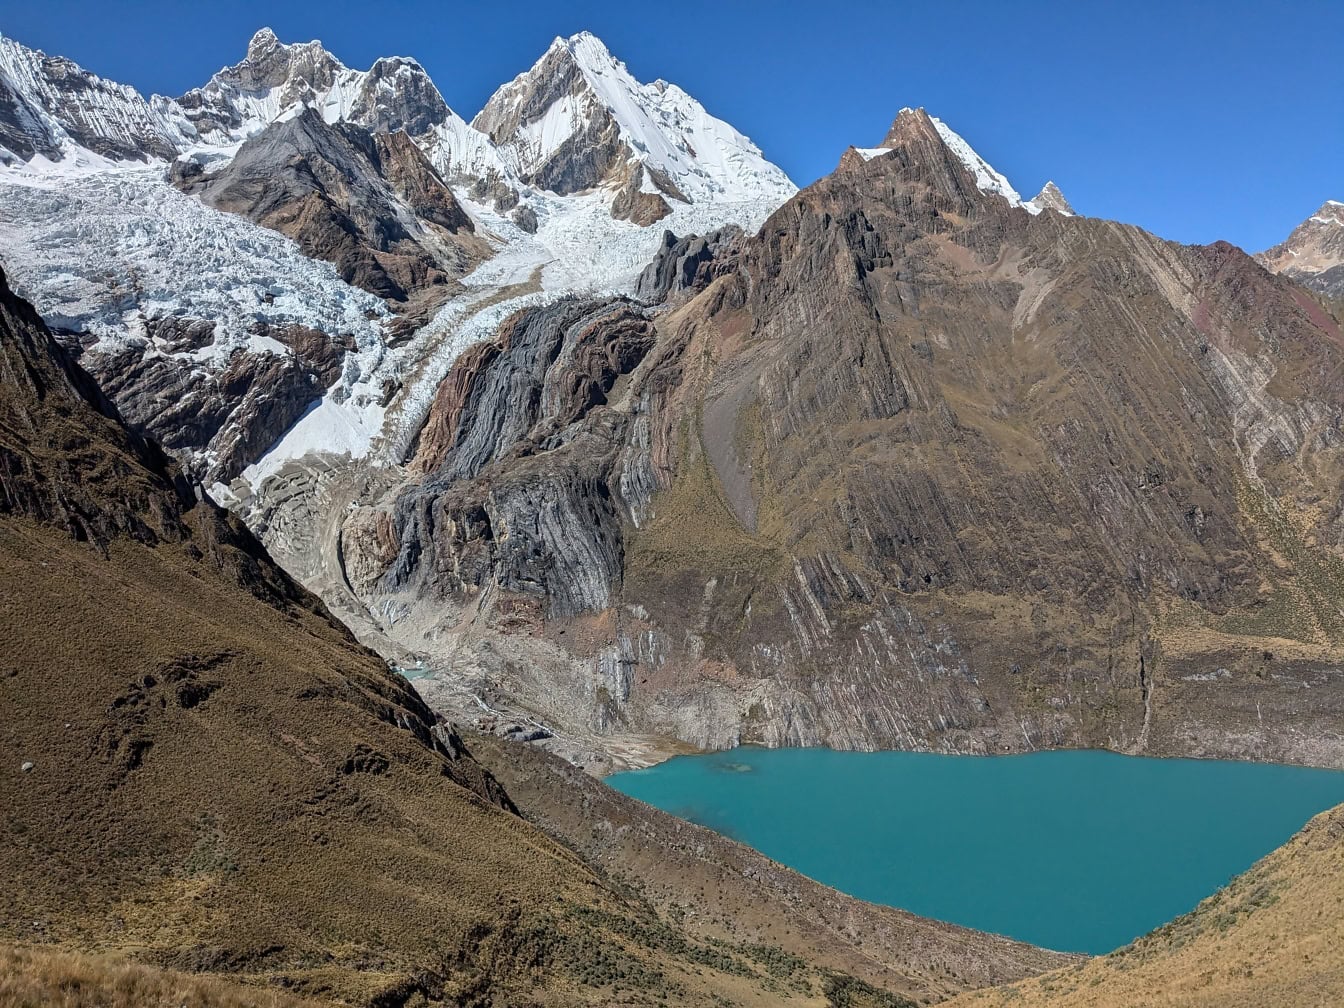 Landskab af en turkis Llanguanco sø, en naturskøn udsigt over en Cordillera Huayhuash en bjergkæde i Andesbjergene i Peru i Latinamerika